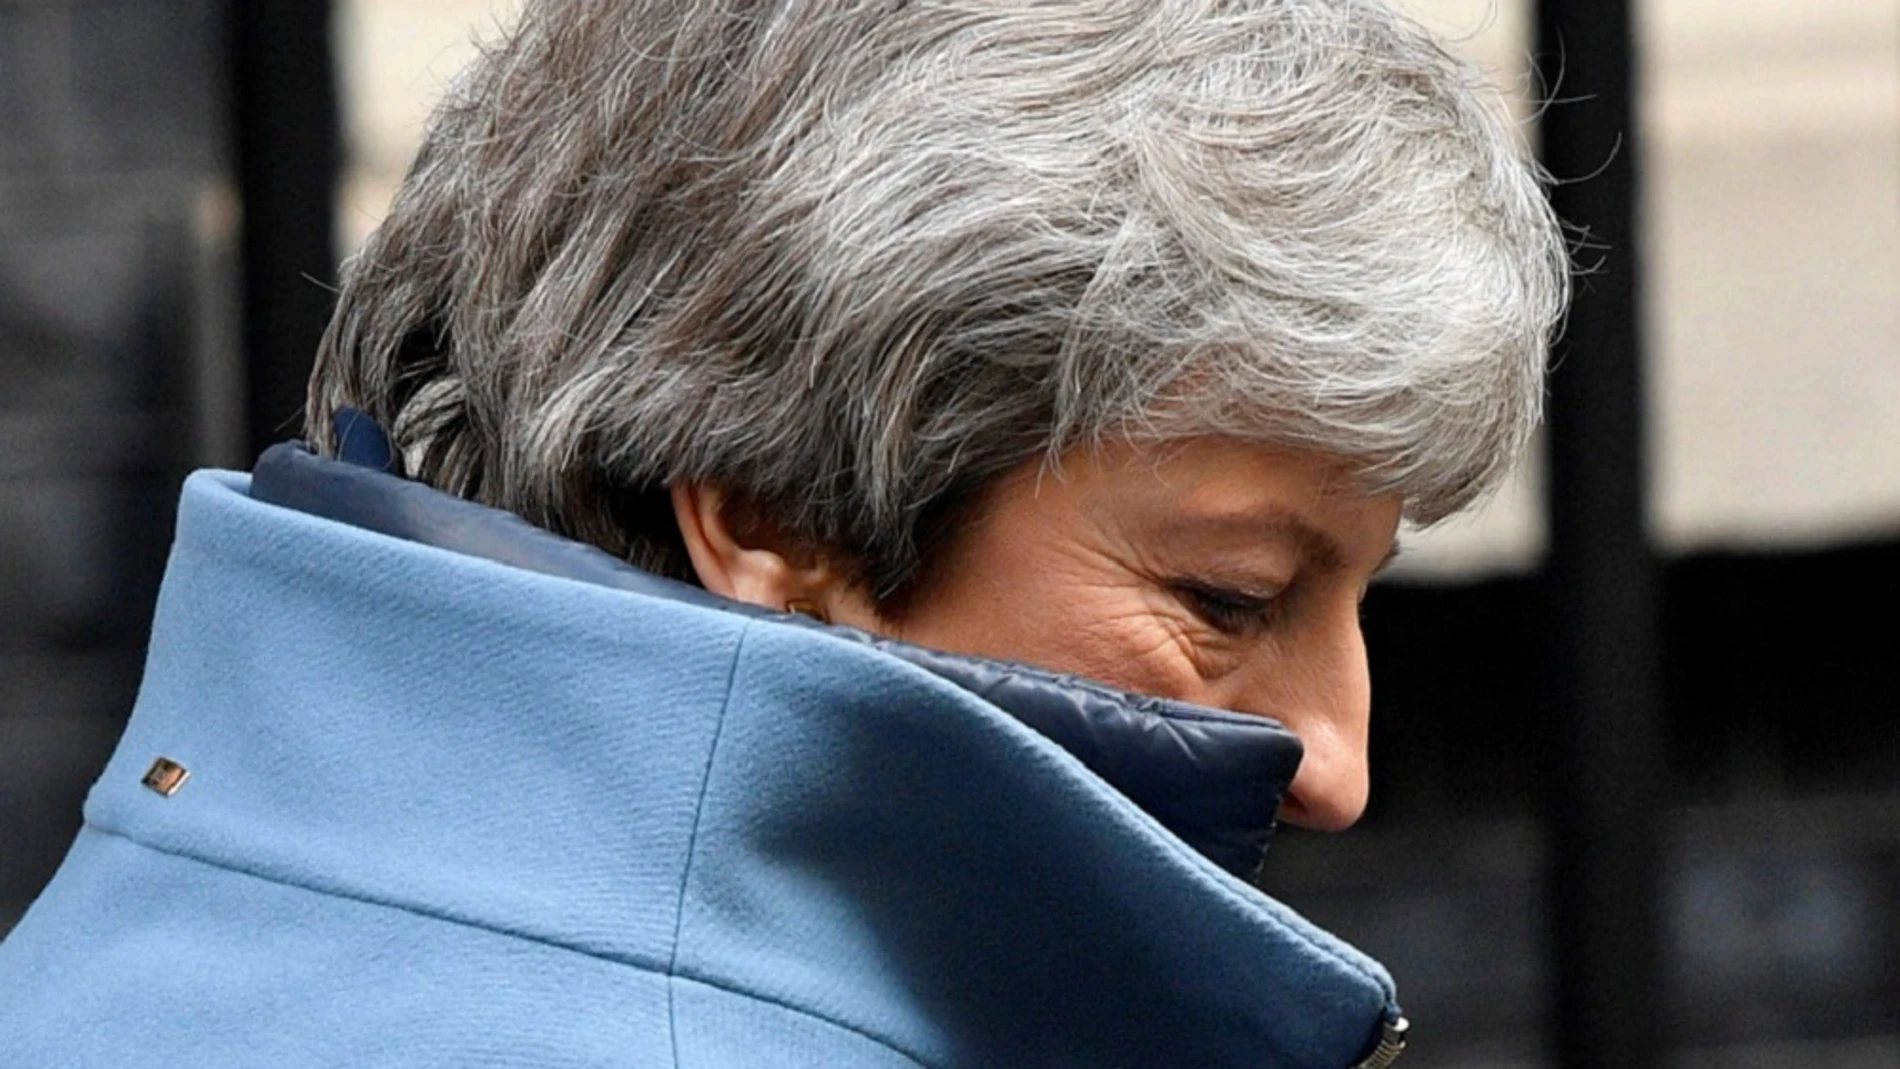 La primera ministra británica, Theresa May, sale de su residencia oficial en Londres (Reino Unido)